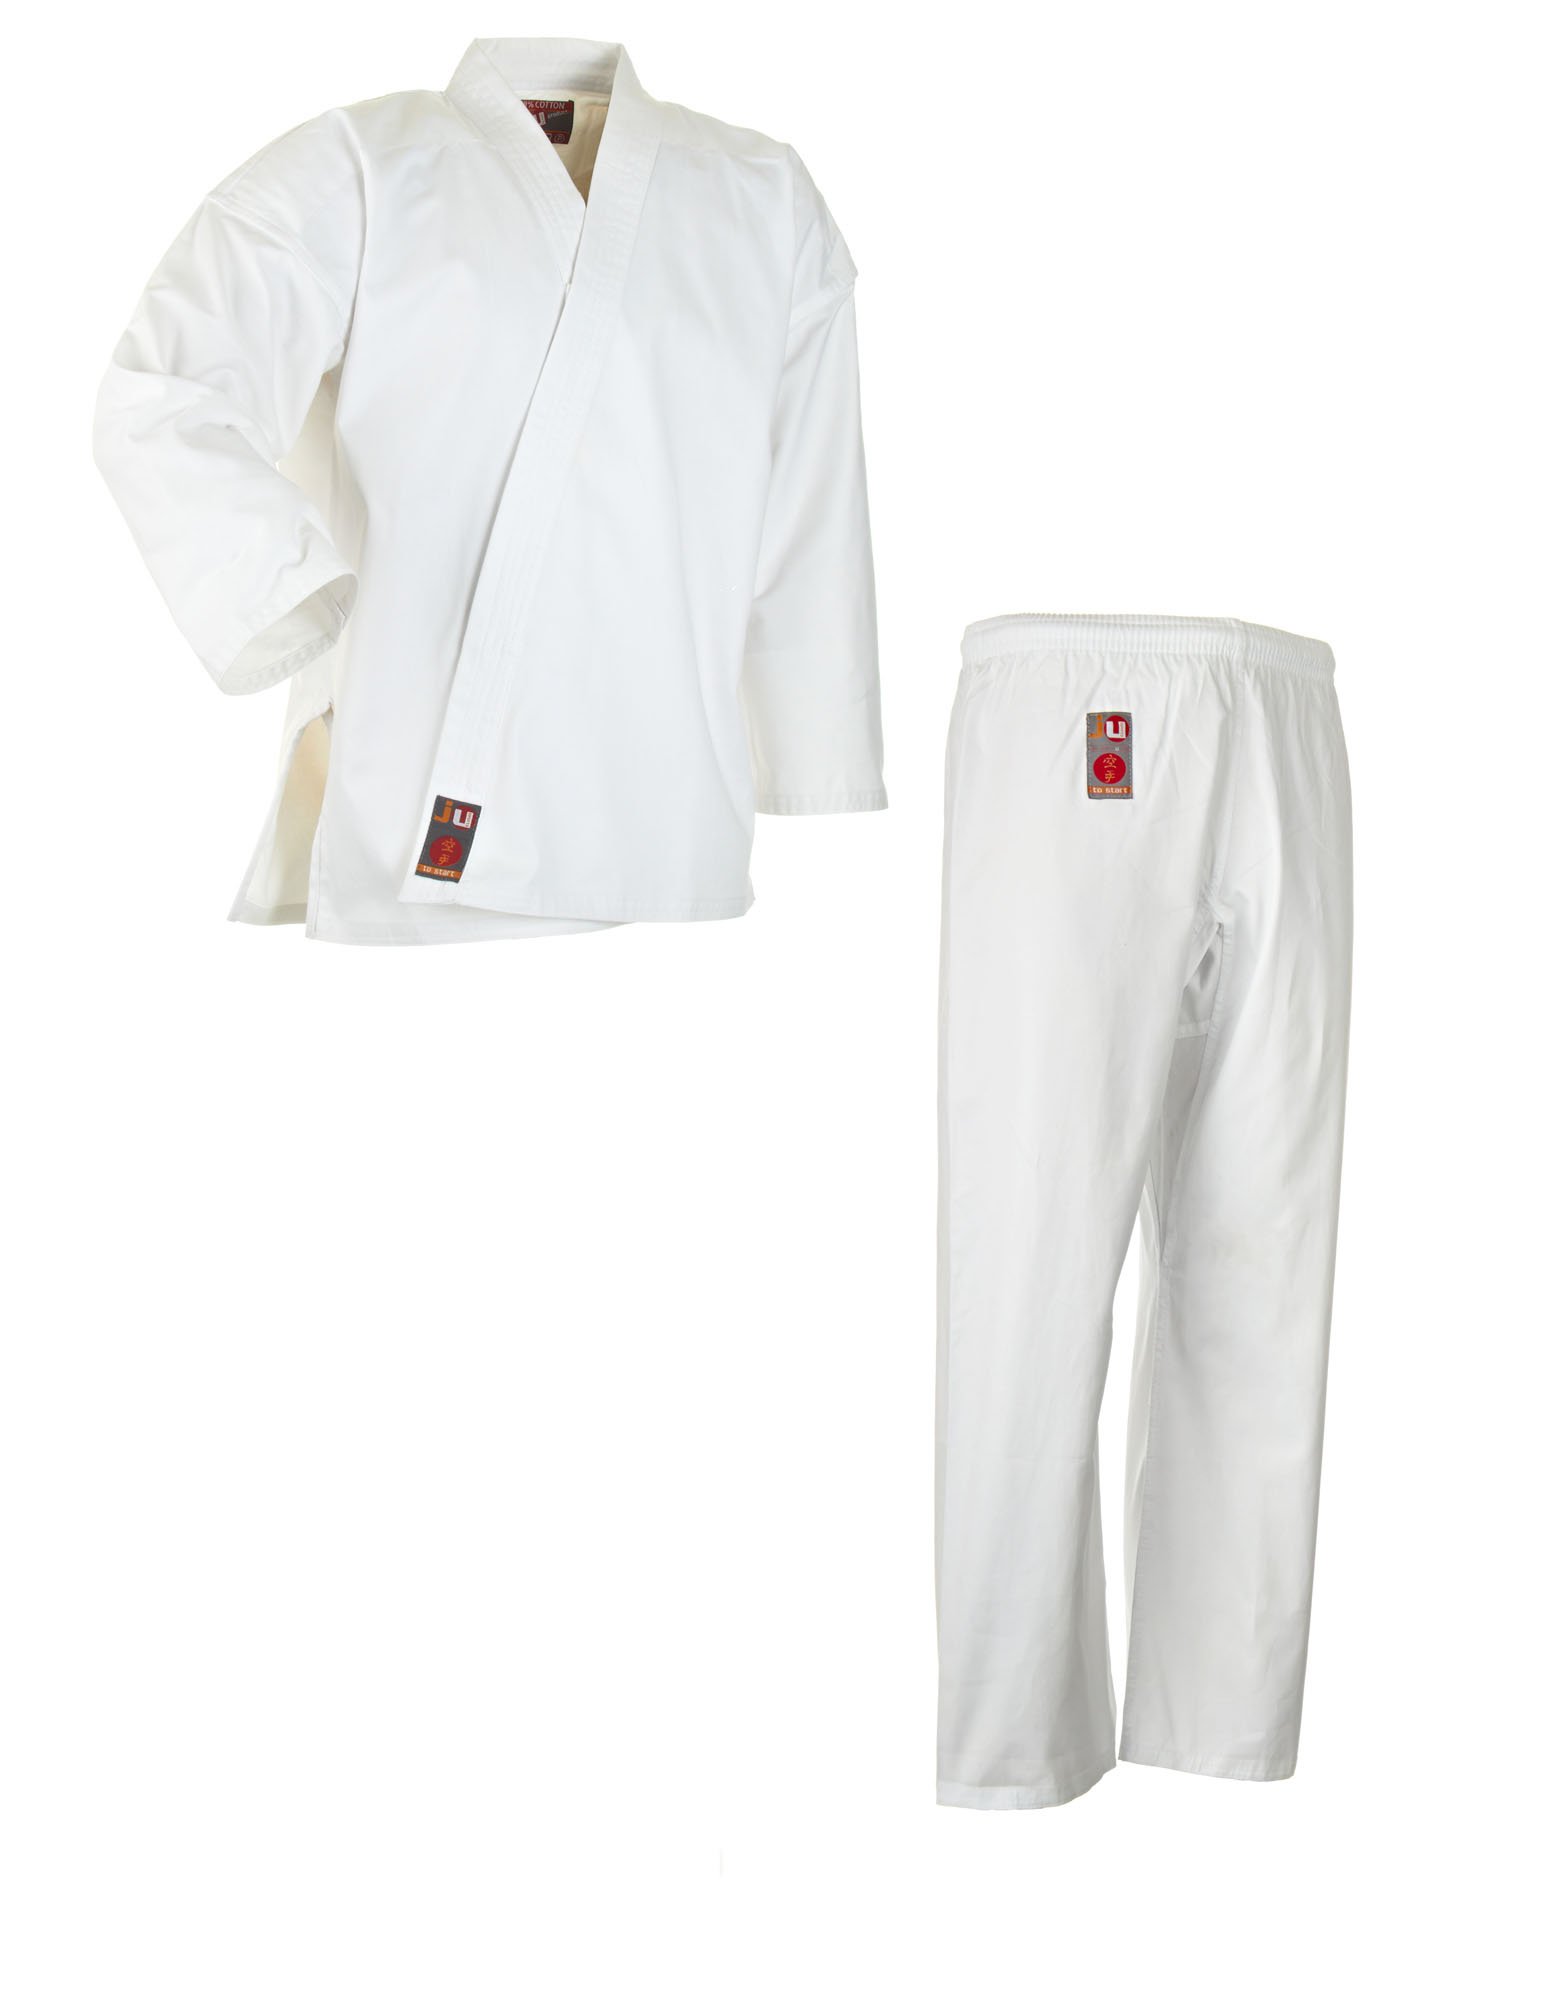 Ju-Sports Karate Anzug to start Weiß 190 I Klassischer Karateanzug für Kinder & Erwachsene I Karate Kimono inkl. weißem Gürtel I Hose mit Kickzwickel I 100% Baumwolle